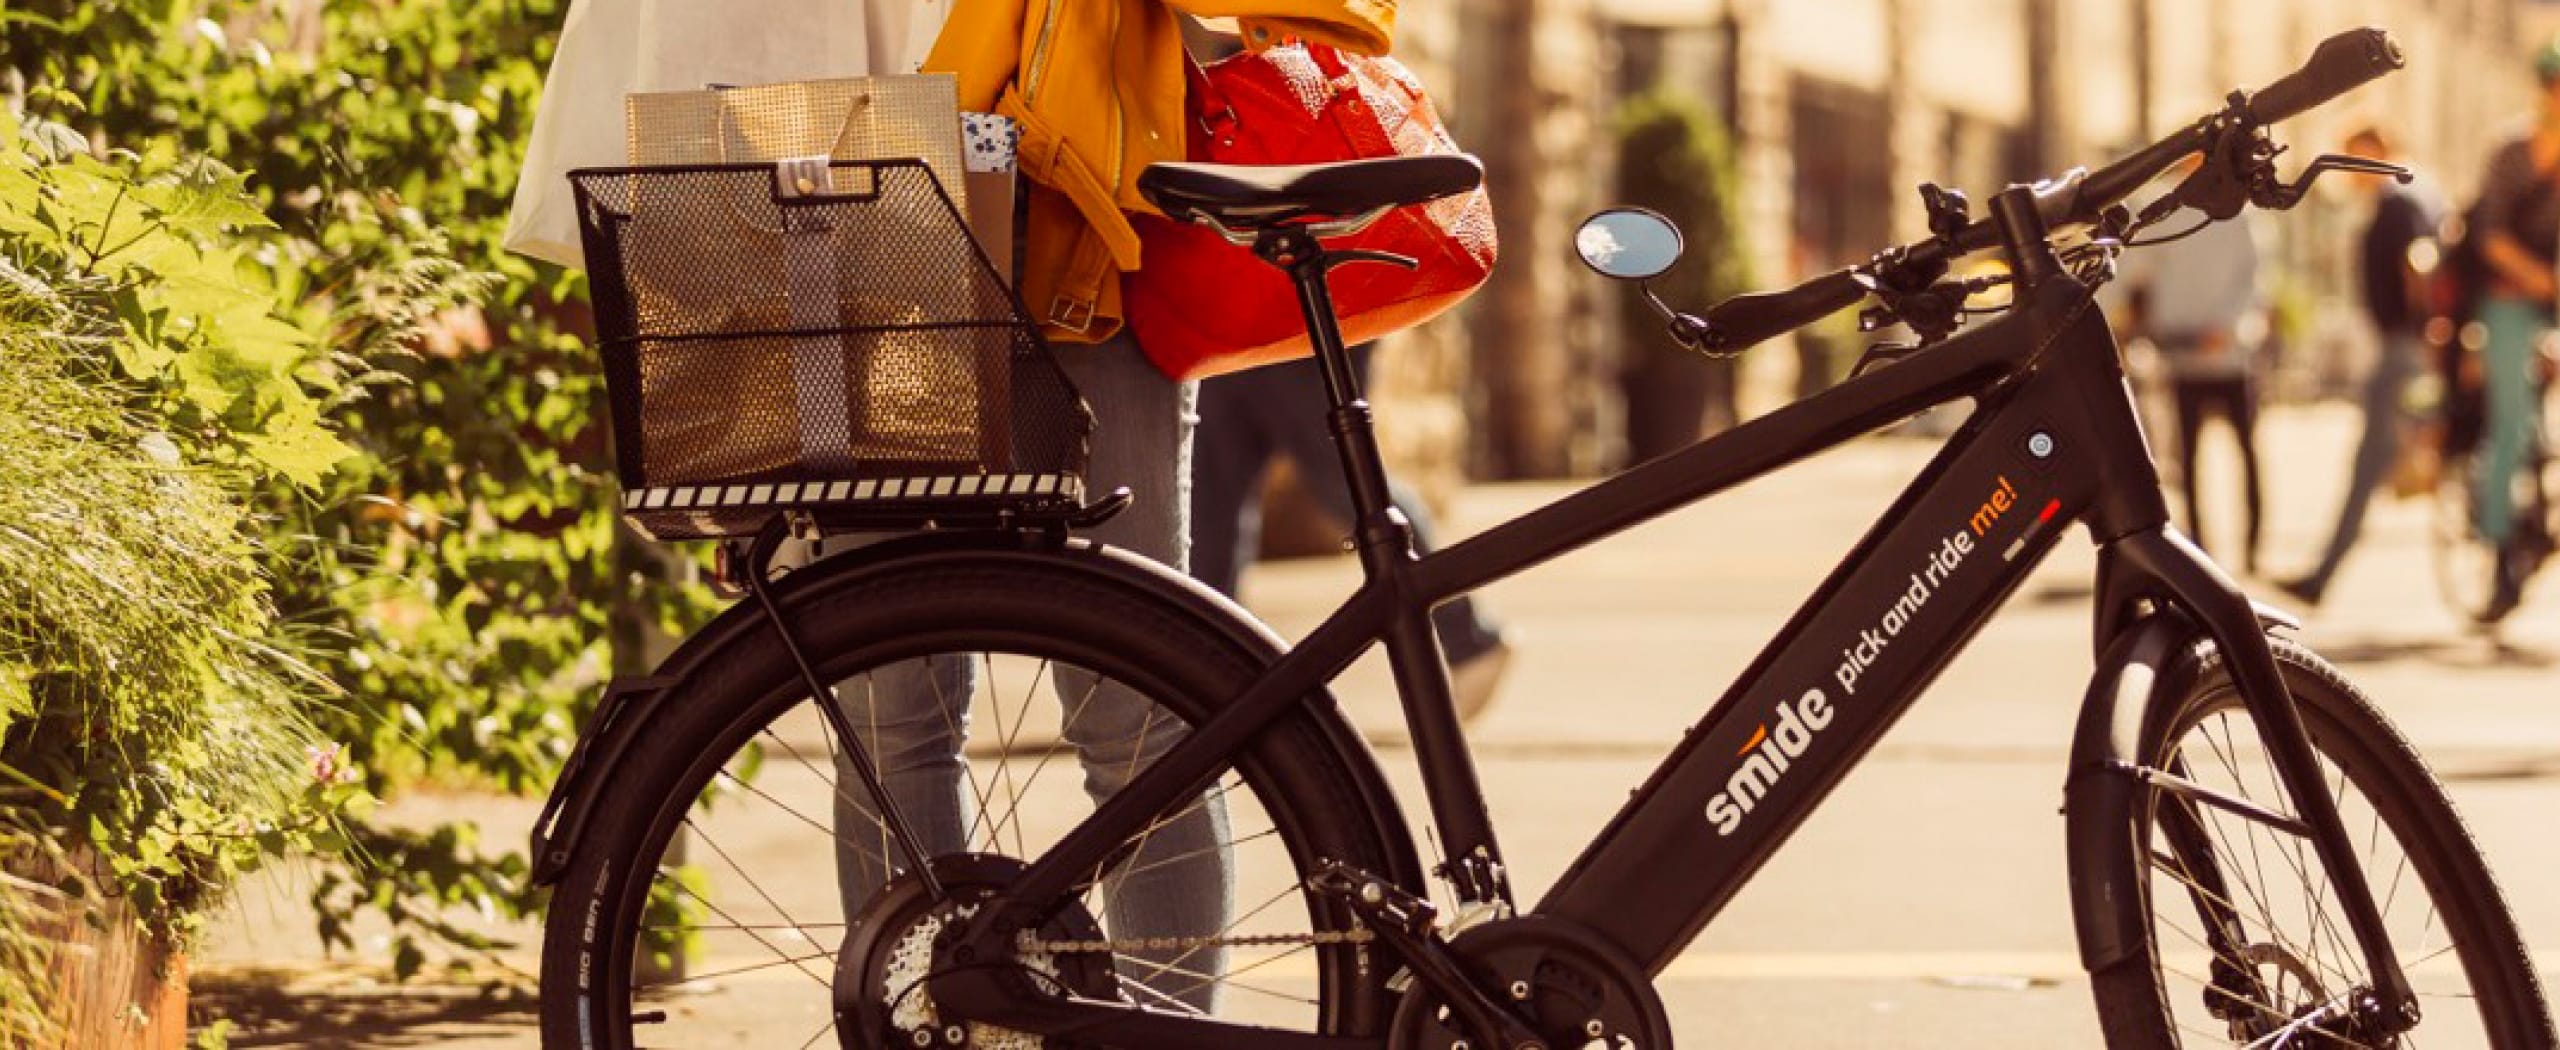 E-Bike, un servizio nuovo per la mobilità sostenibile nel Chianti